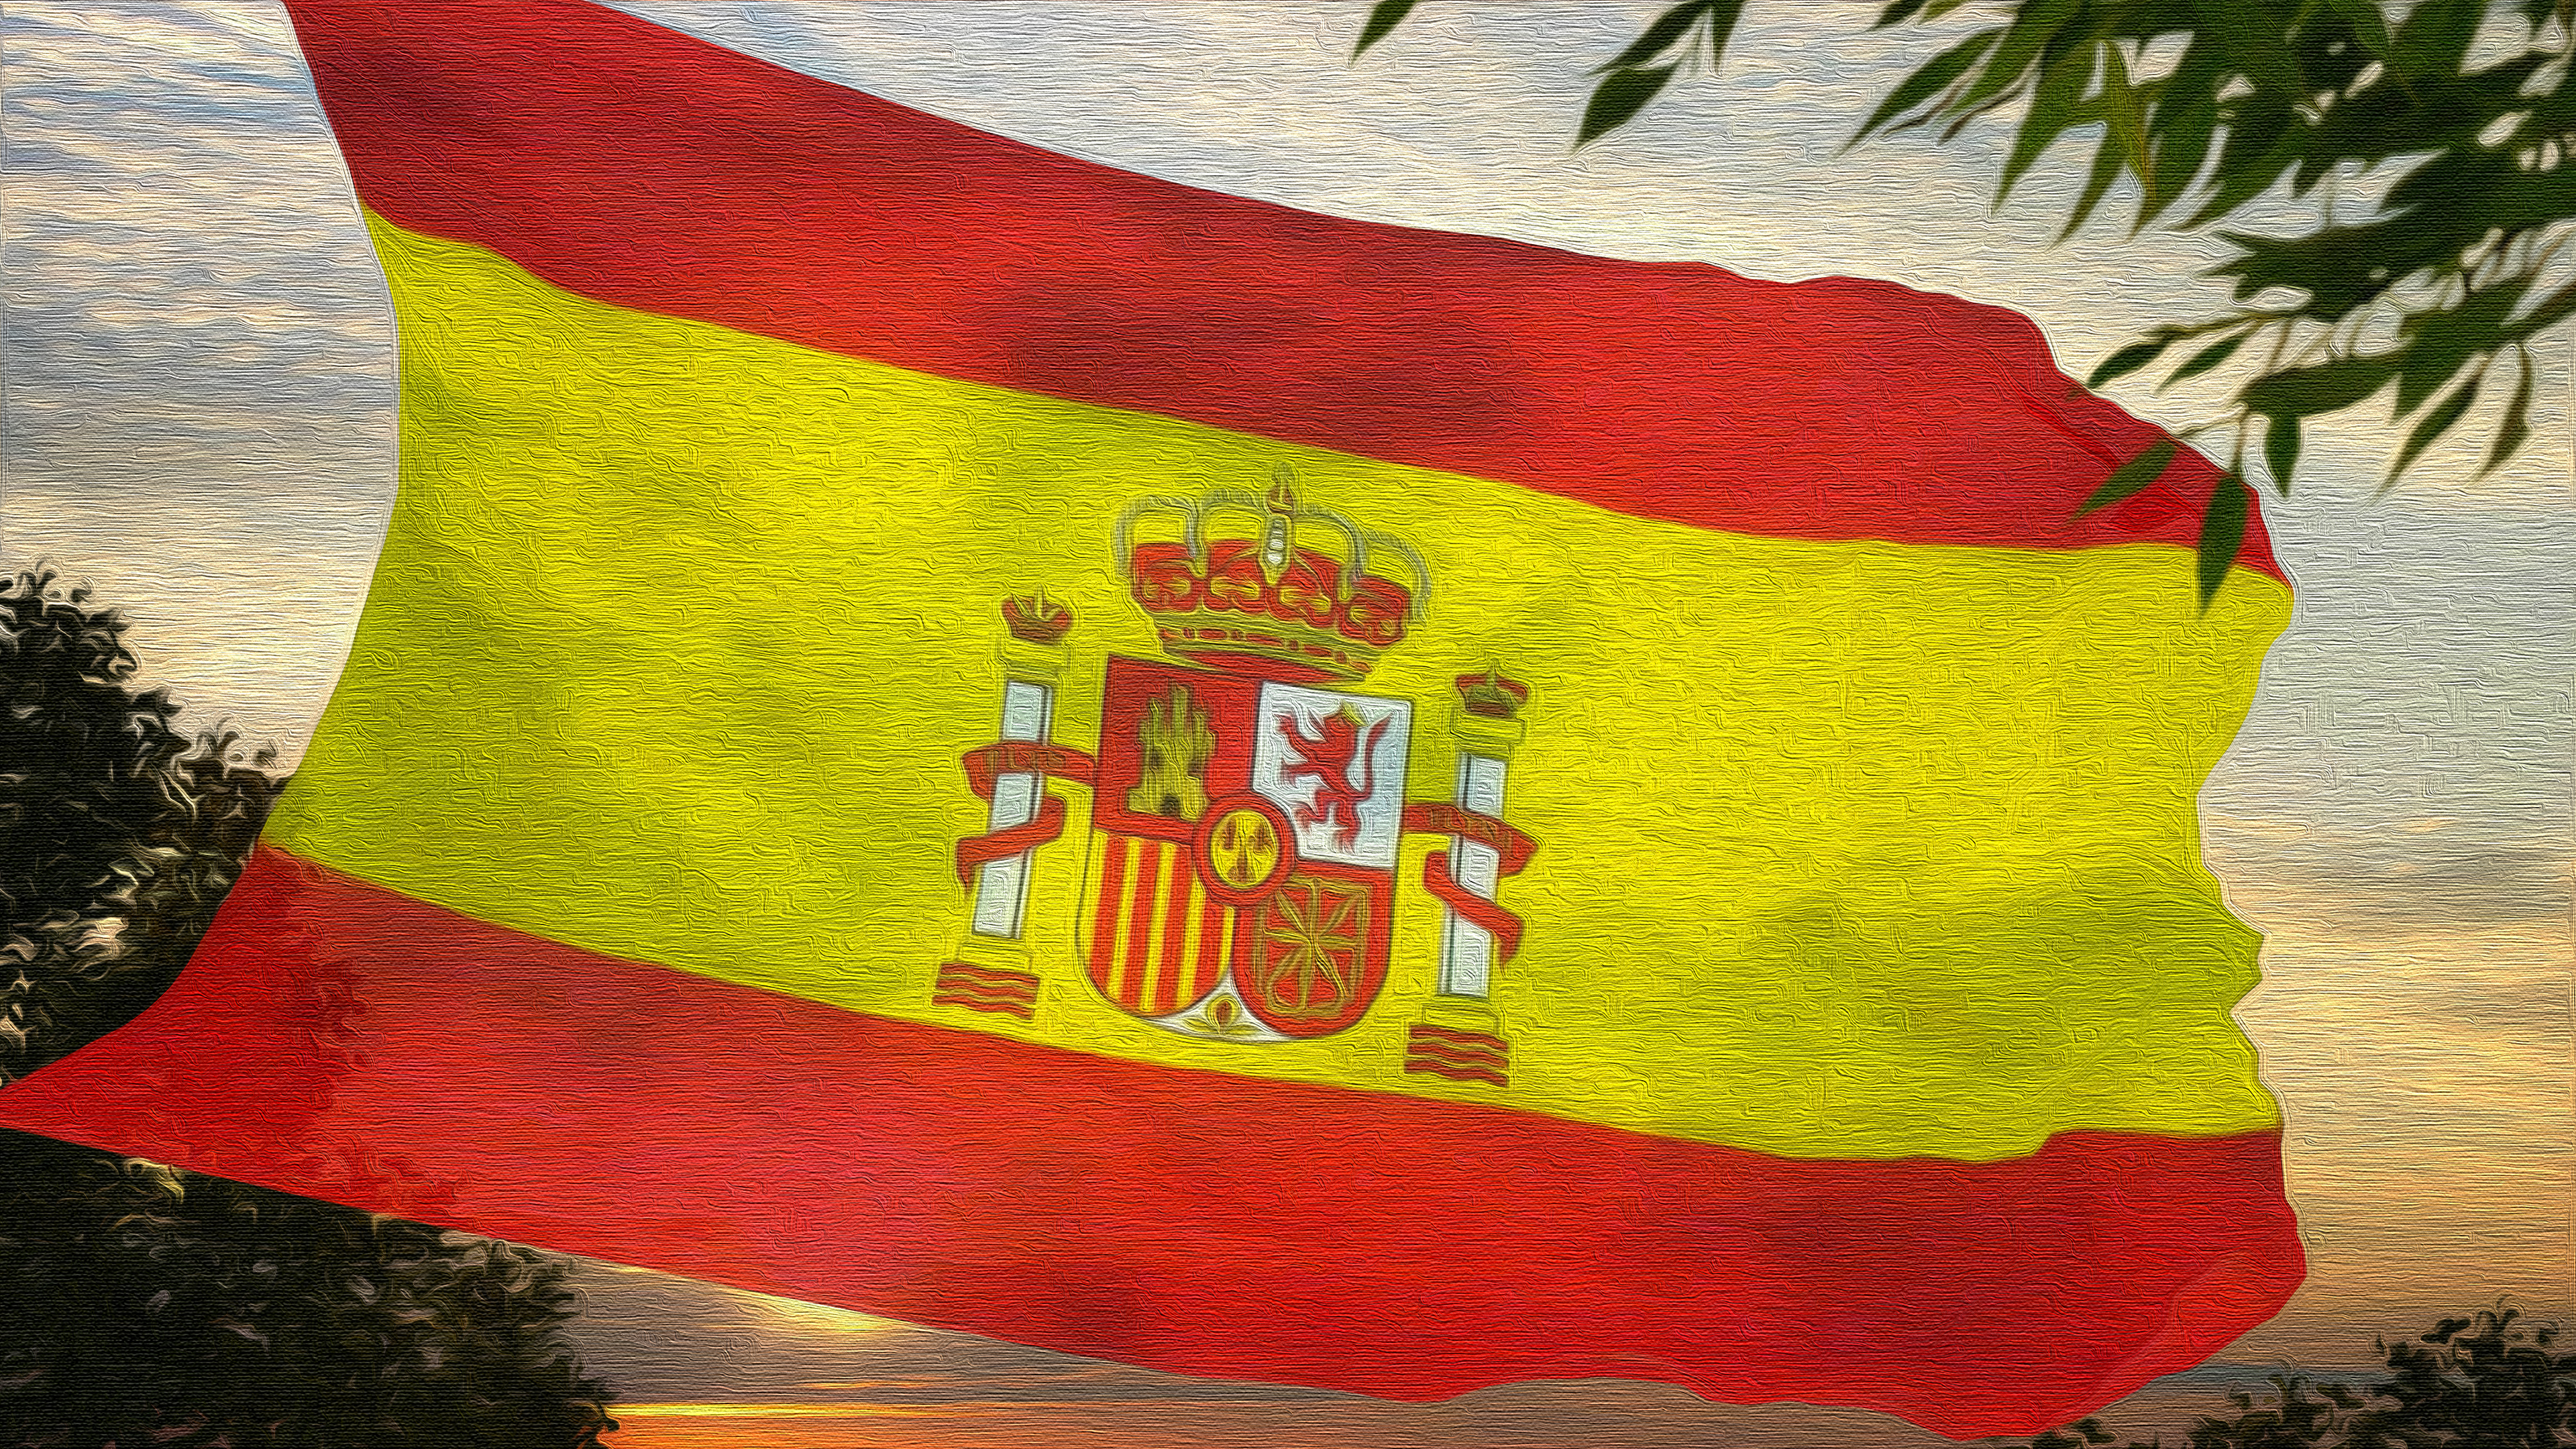 Скачать обои Испанский Флаг на телефон бесплатно